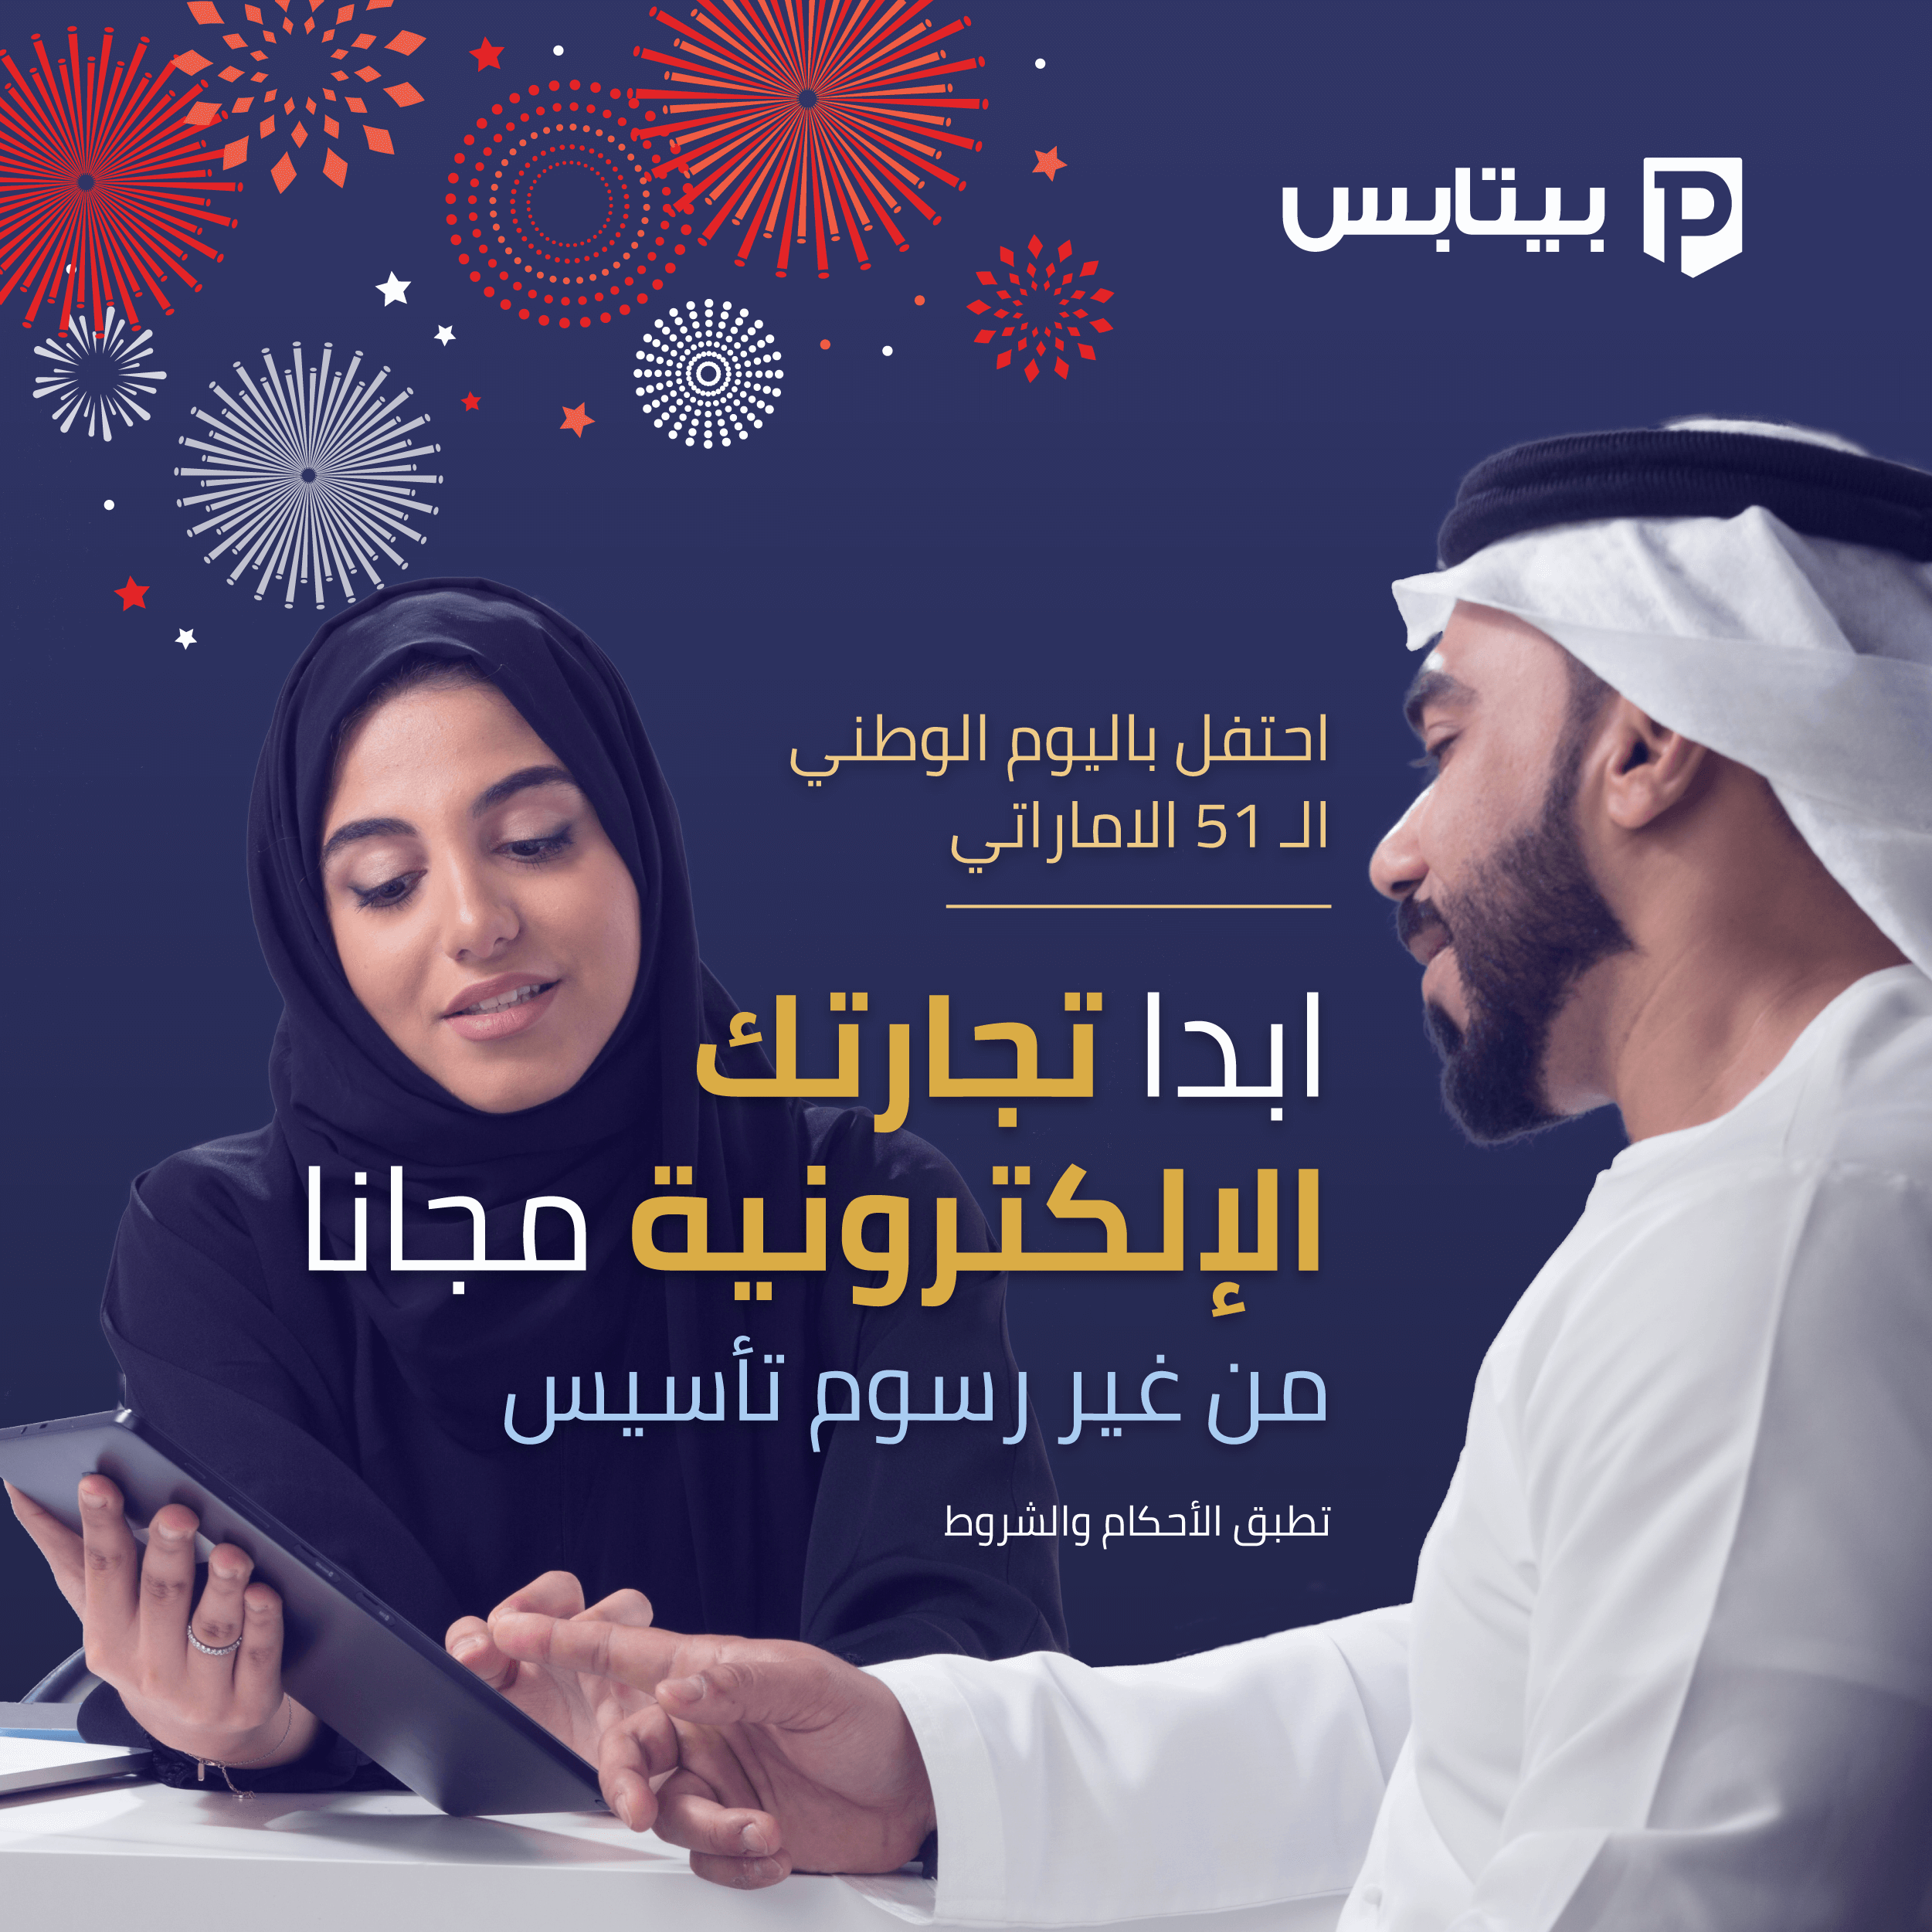 ابدأ عملك في التجارة الإلكترونية مجانًا في الإمارات العربية المتحدة